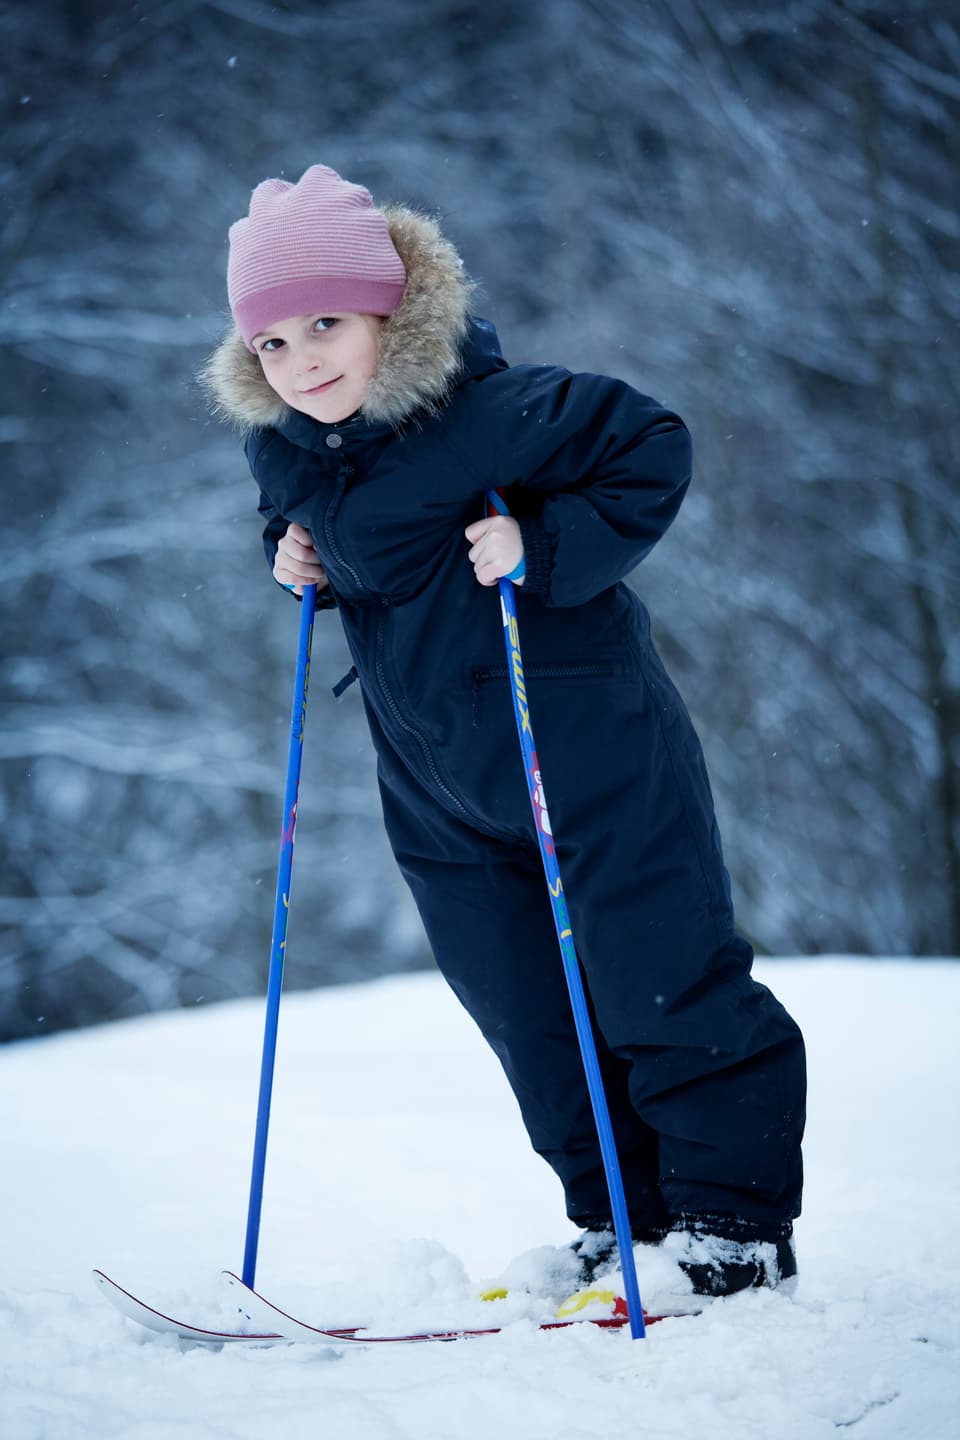 Prinzessin Ingrid auf Skis